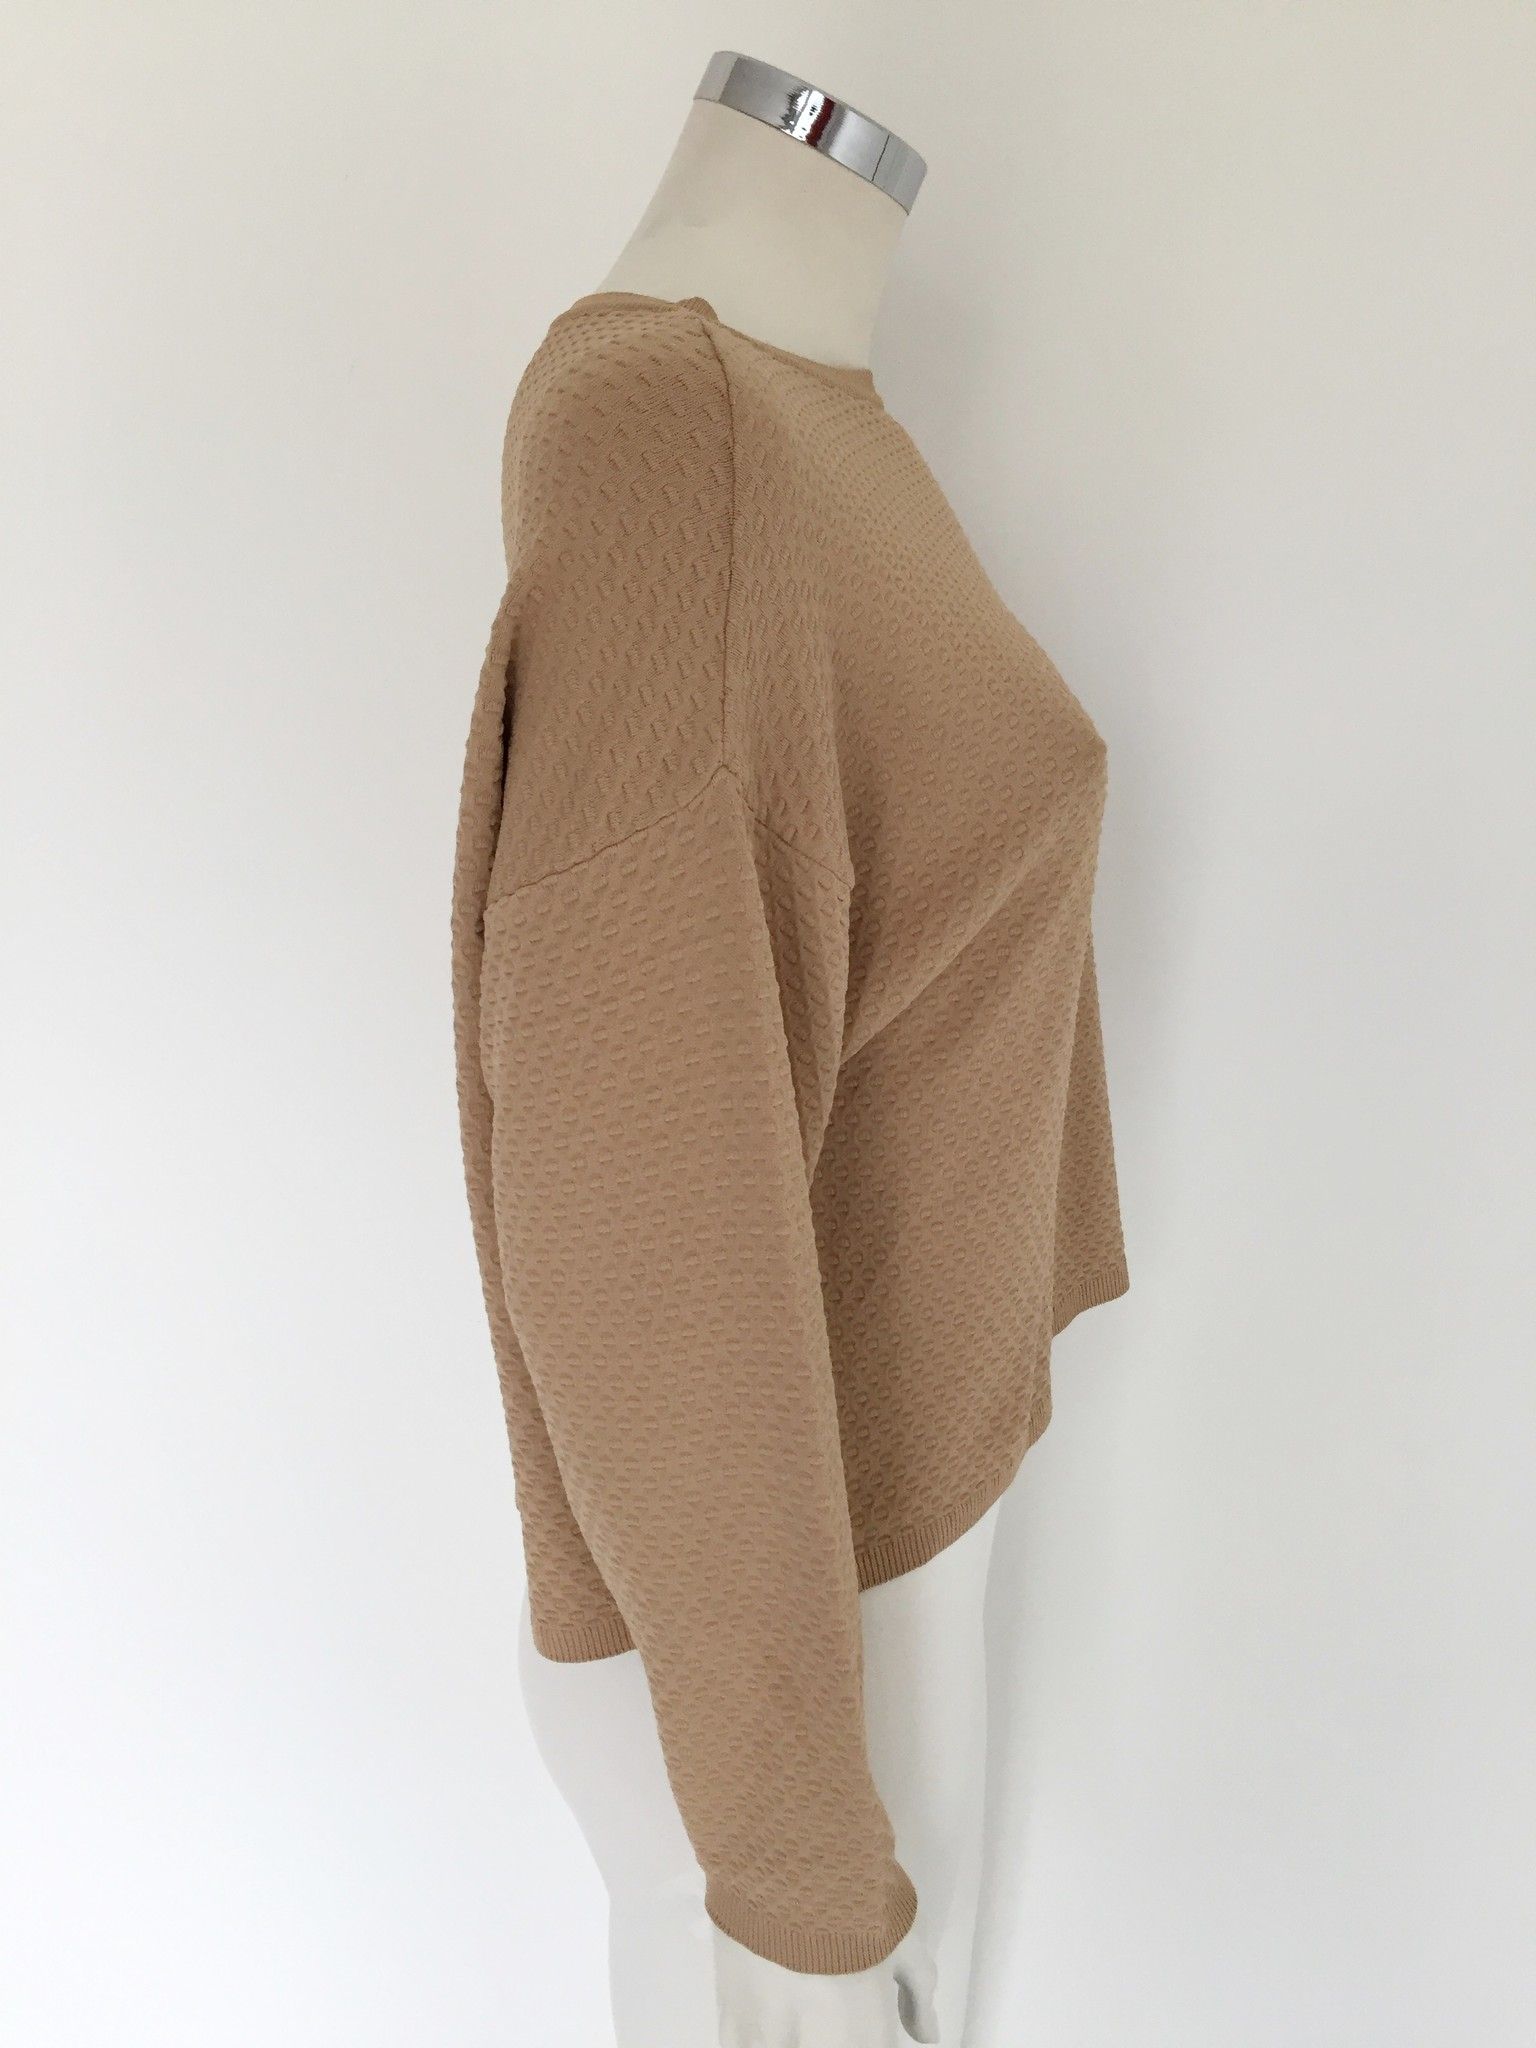 LadyBug Holed Sweater Cod.3629